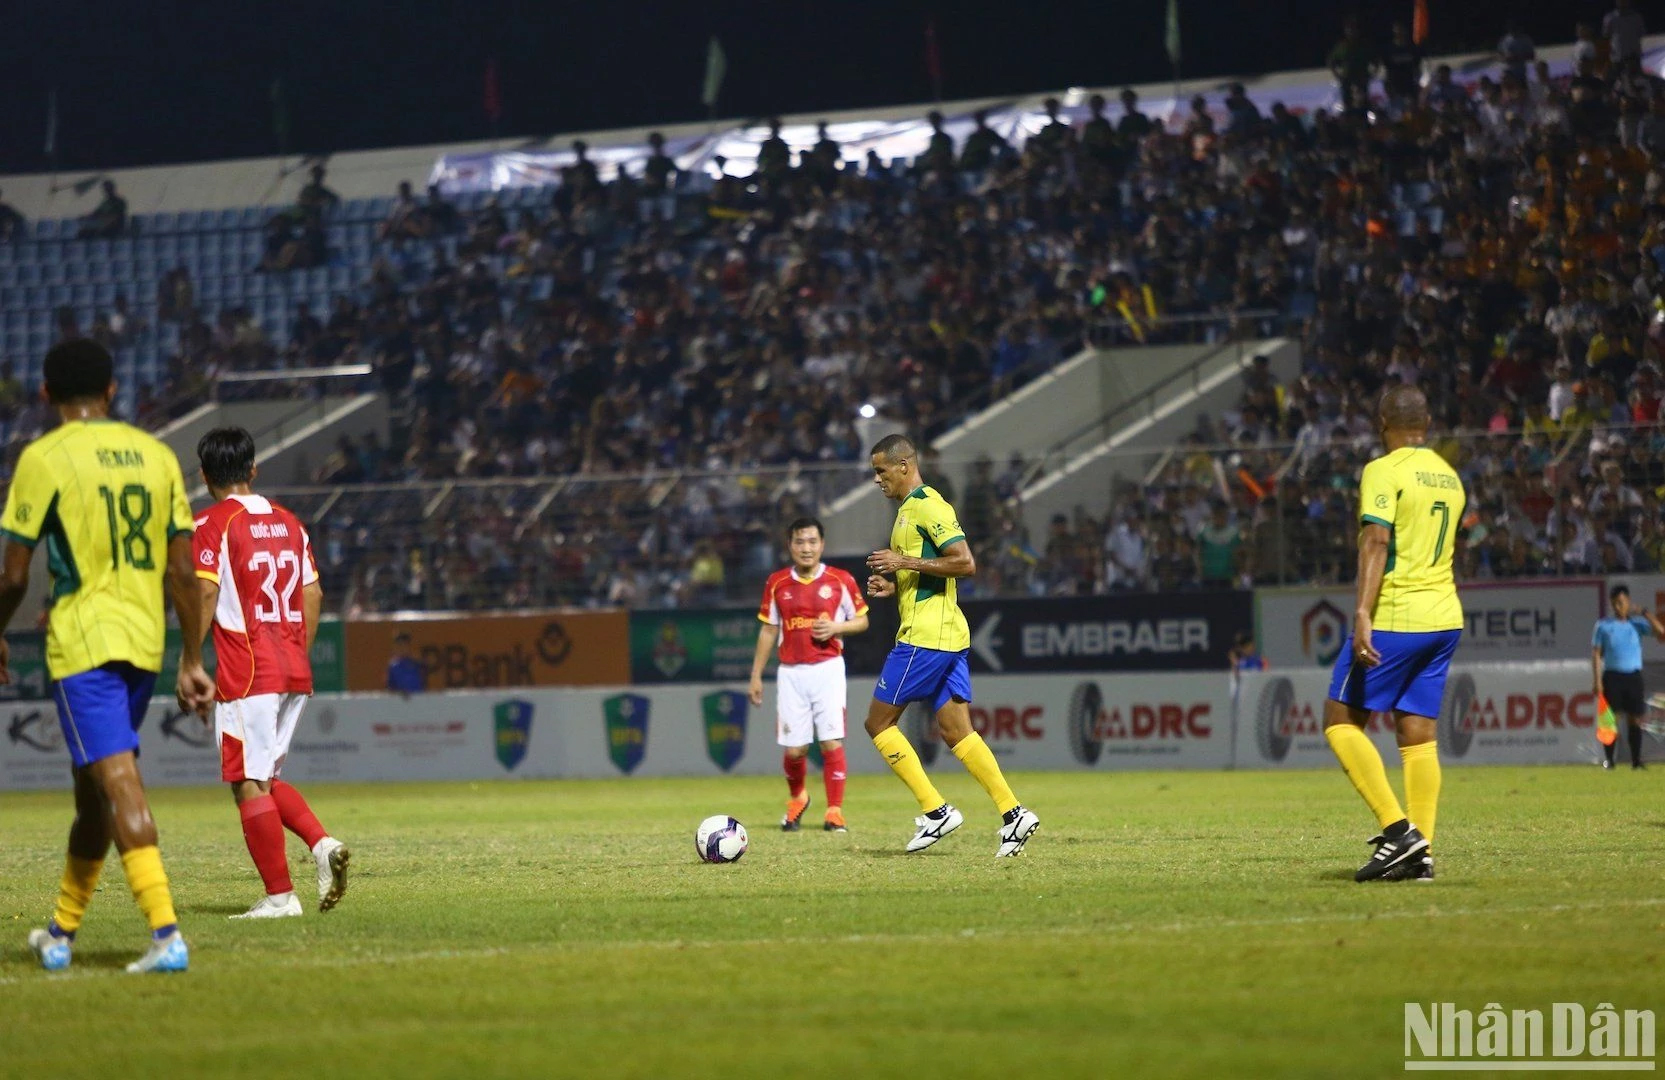 Đây là lần đầu tiên các ngôi sao bóng đá hàng đầu qua các thời kỳ của Việt Nam và Brazil tham gia trận giao hữu bóng đá tại Đà Nẵng.